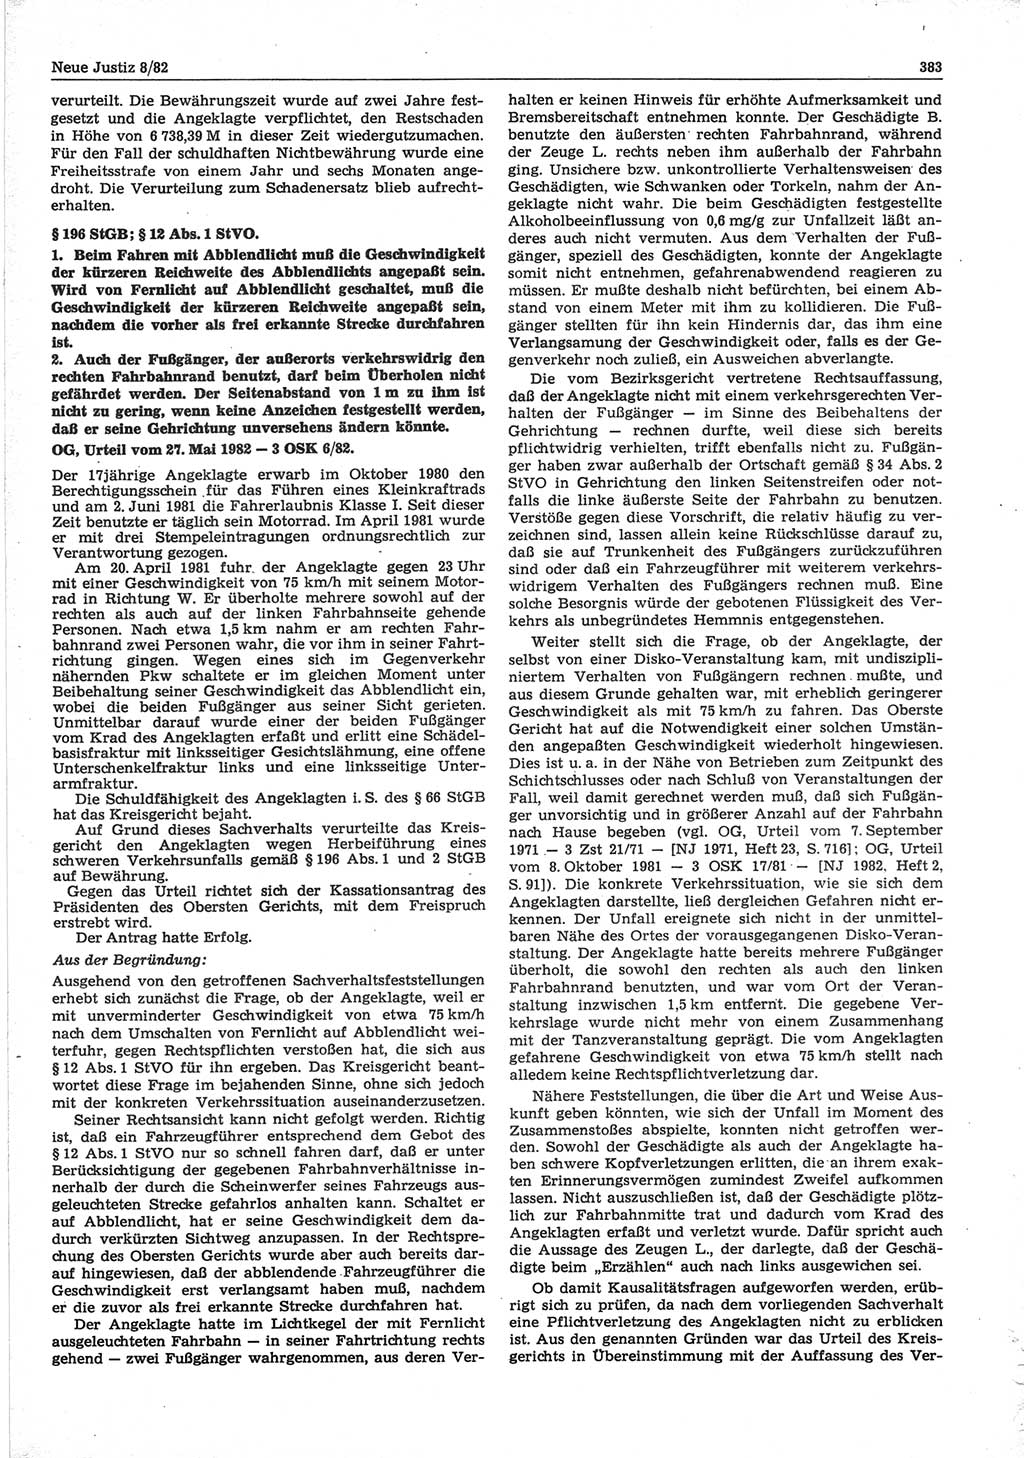 Neue Justiz (NJ), Zeitschrift für sozialistisches Recht und Gesetzlichkeit [Deutsche Demokratische Republik (DDR)], 36. Jahrgang 1982, Seite 383 (NJ DDR 1982, S. 383)